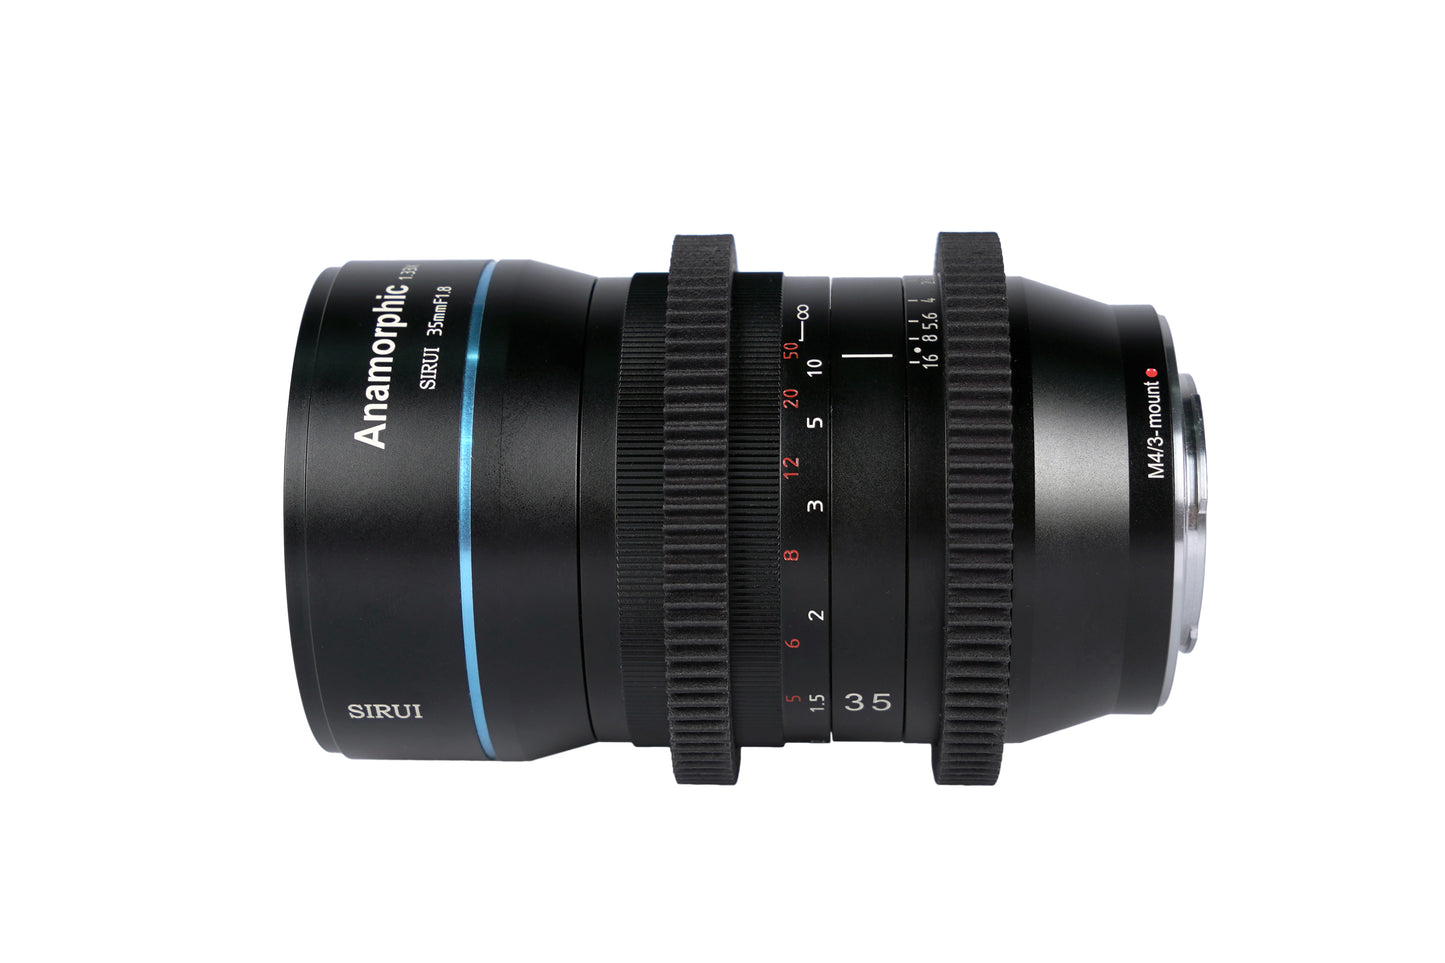 SIRUI SR35 35mm f1.8 Anamorphes APS-C Objektiv 1.33x - für diverse Kameraanschlüsse